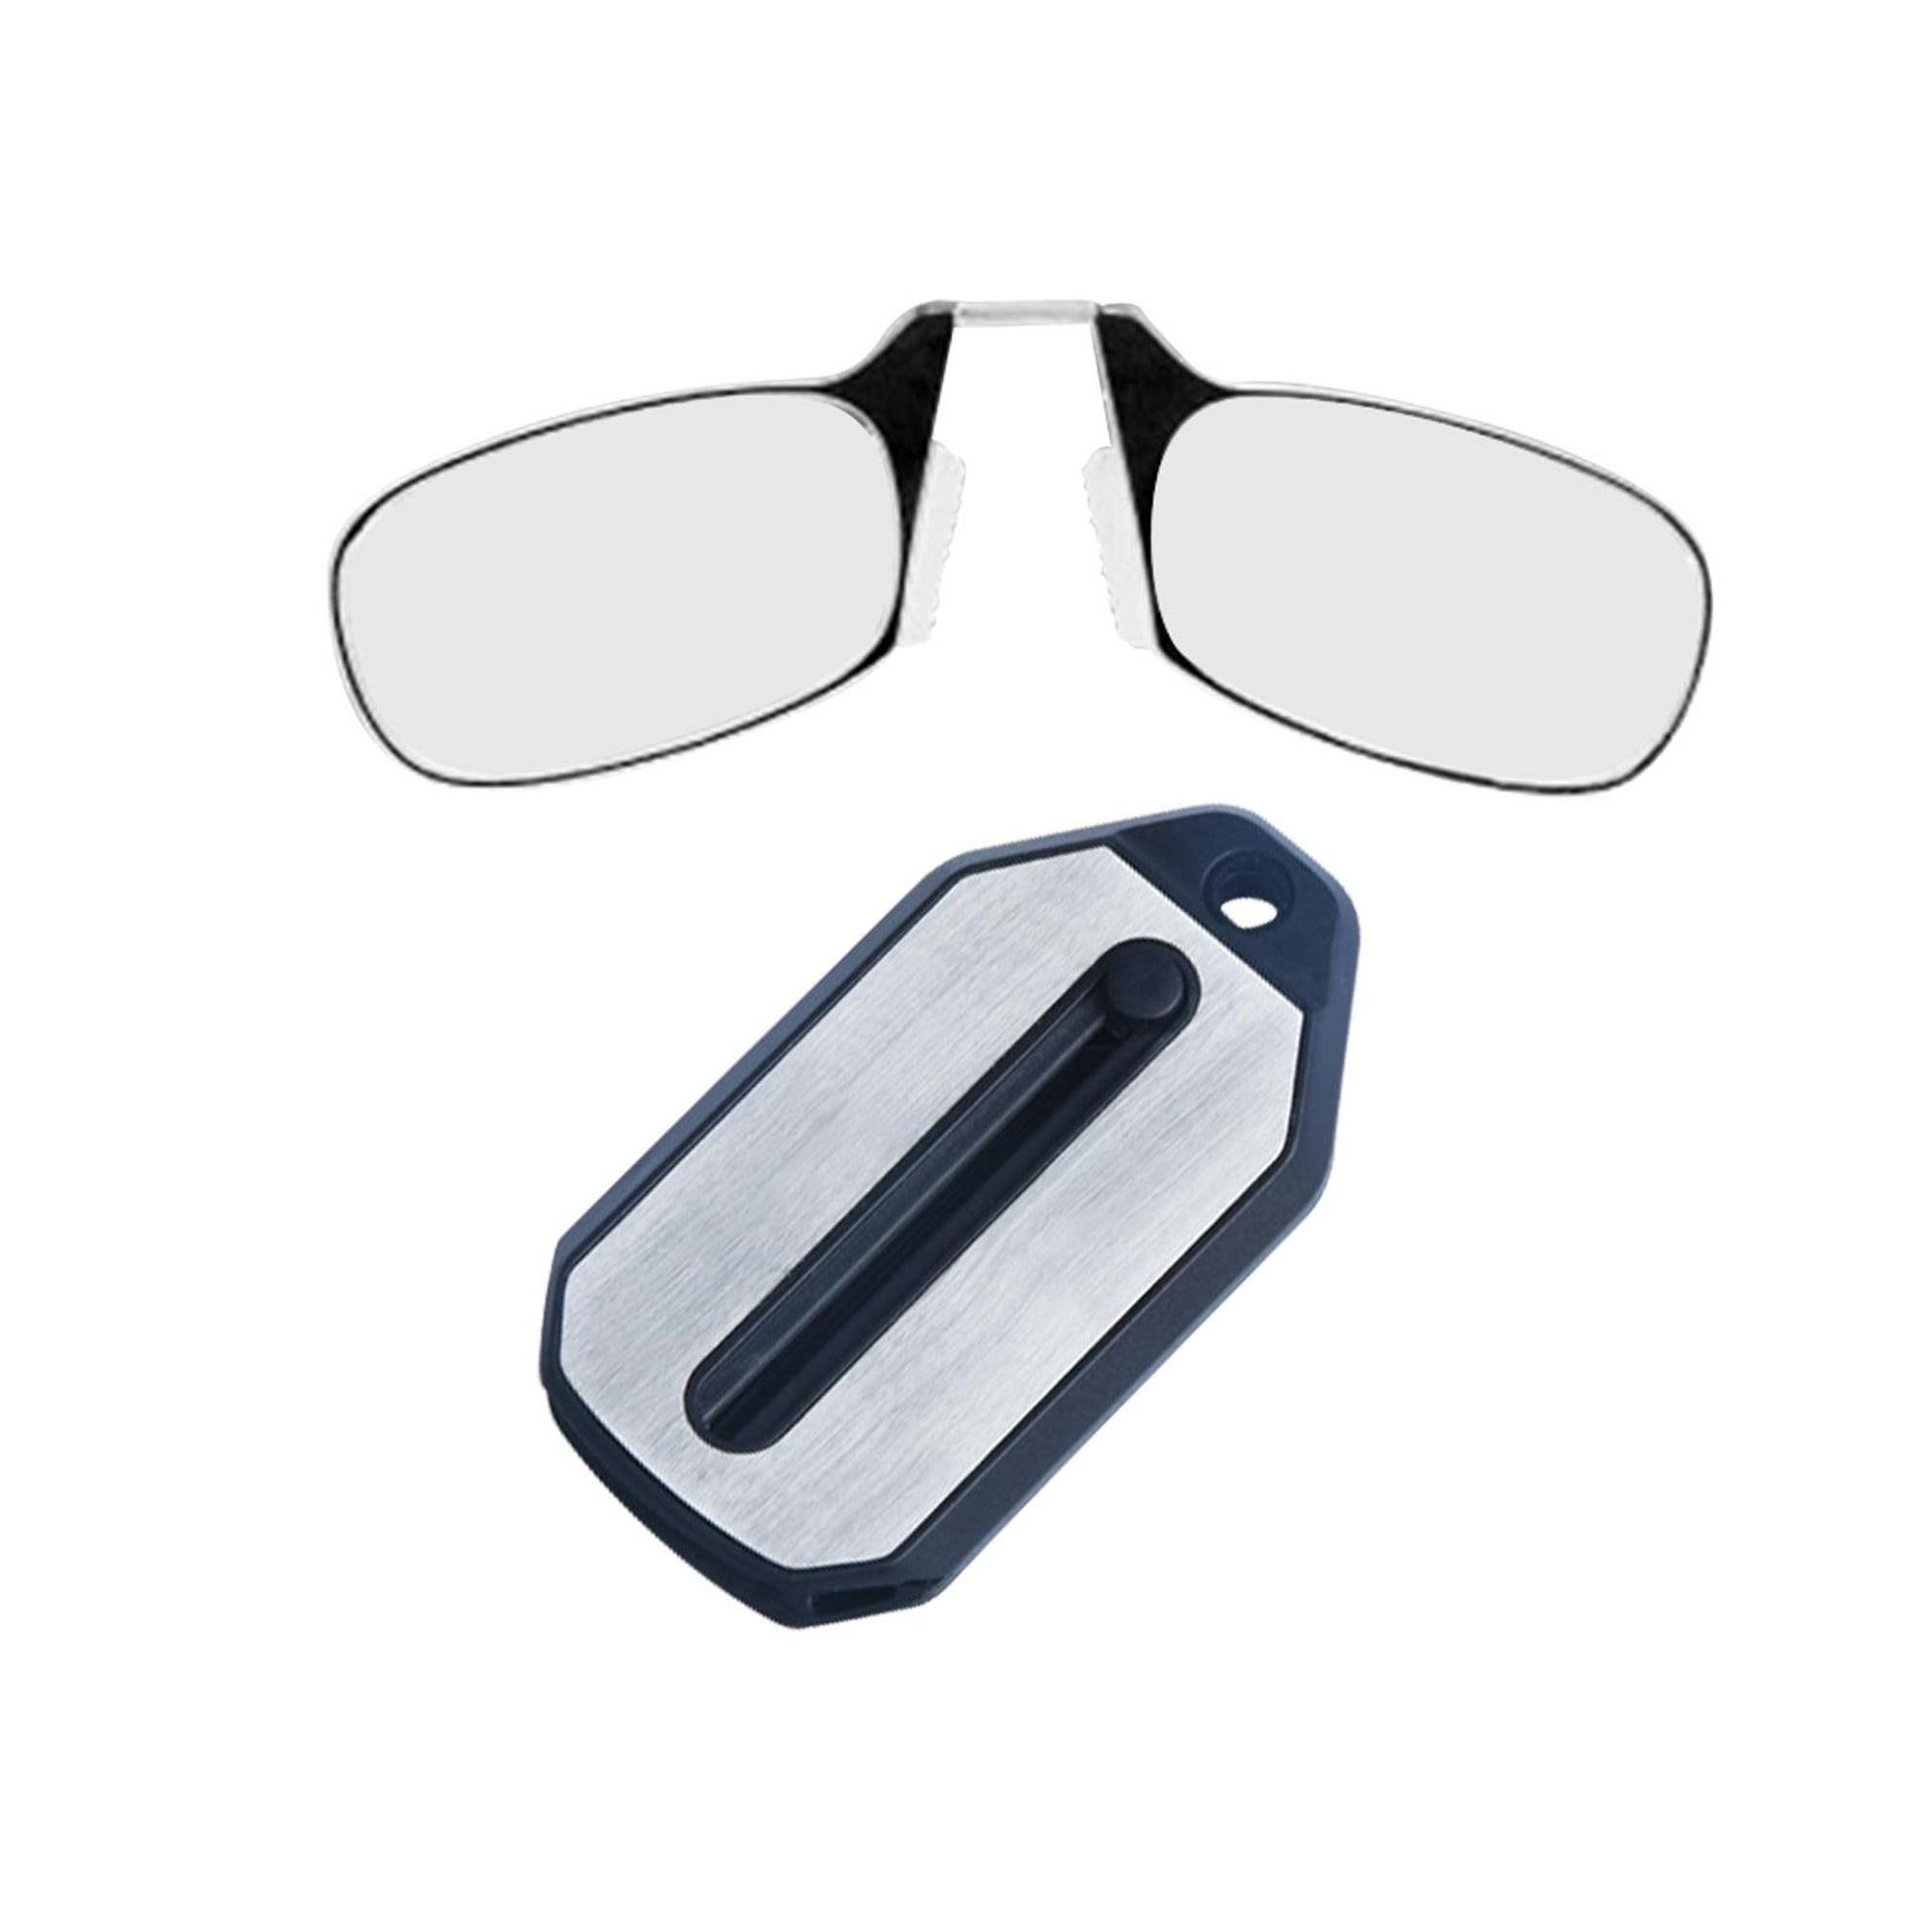  Mini llavero suave limpiador de lentes, gafas de microfibra  limpiador de toallitas! : Salud y Hogar